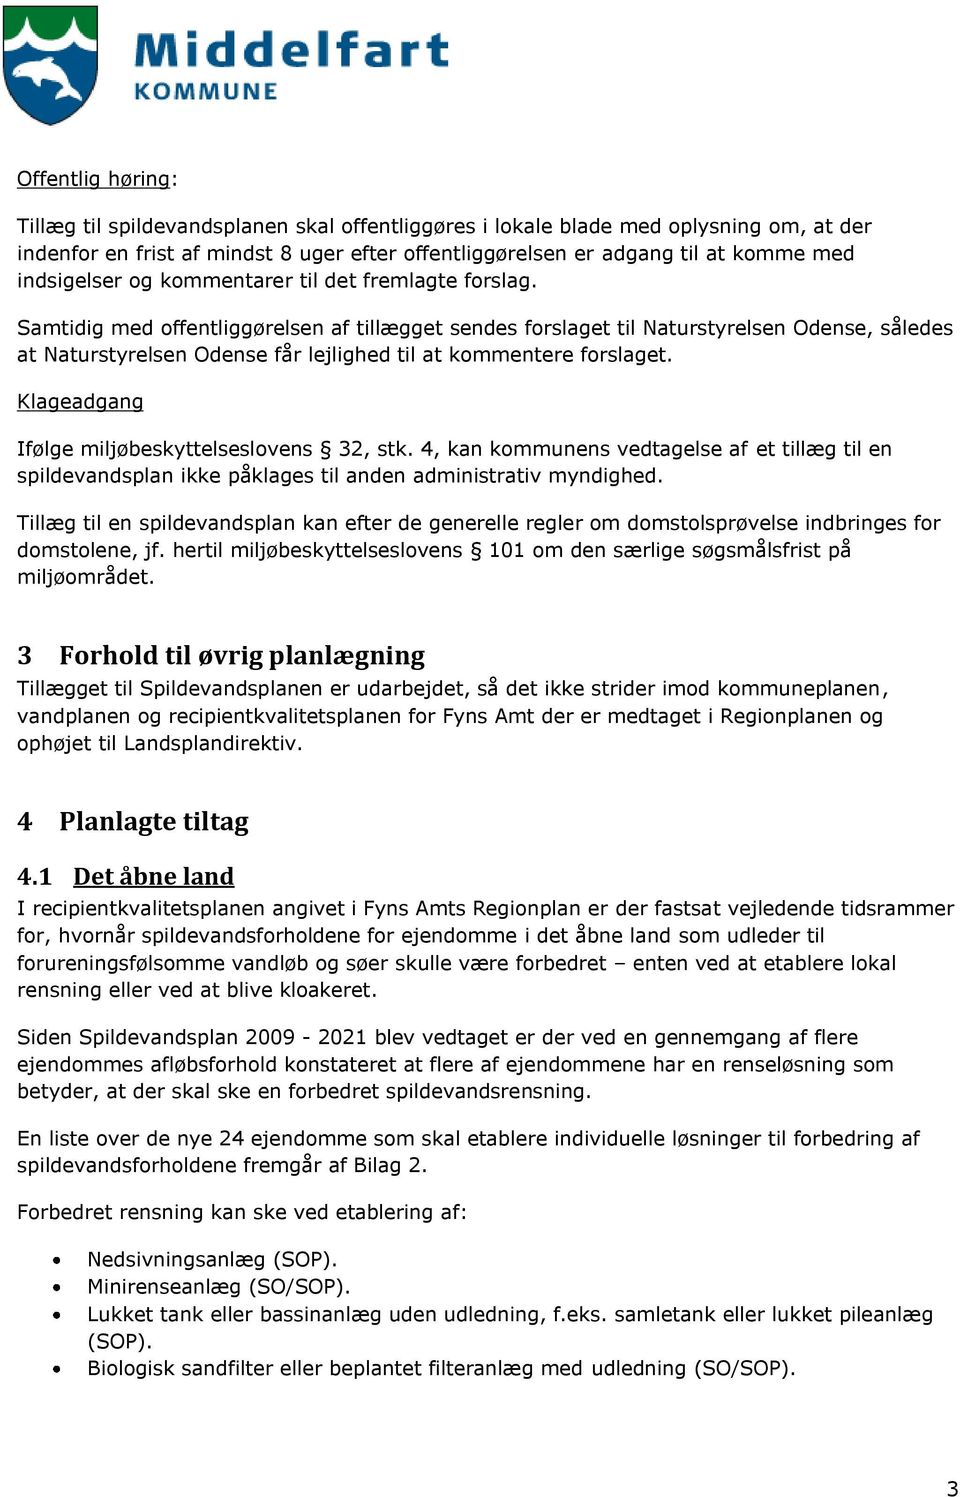 Samtidig med offentliggørelsen af tillægget sendes forslaget til Naturstyrelsen Odense, således at Naturstyrelsen Odense får lejlighed til at kommentere forslaget.